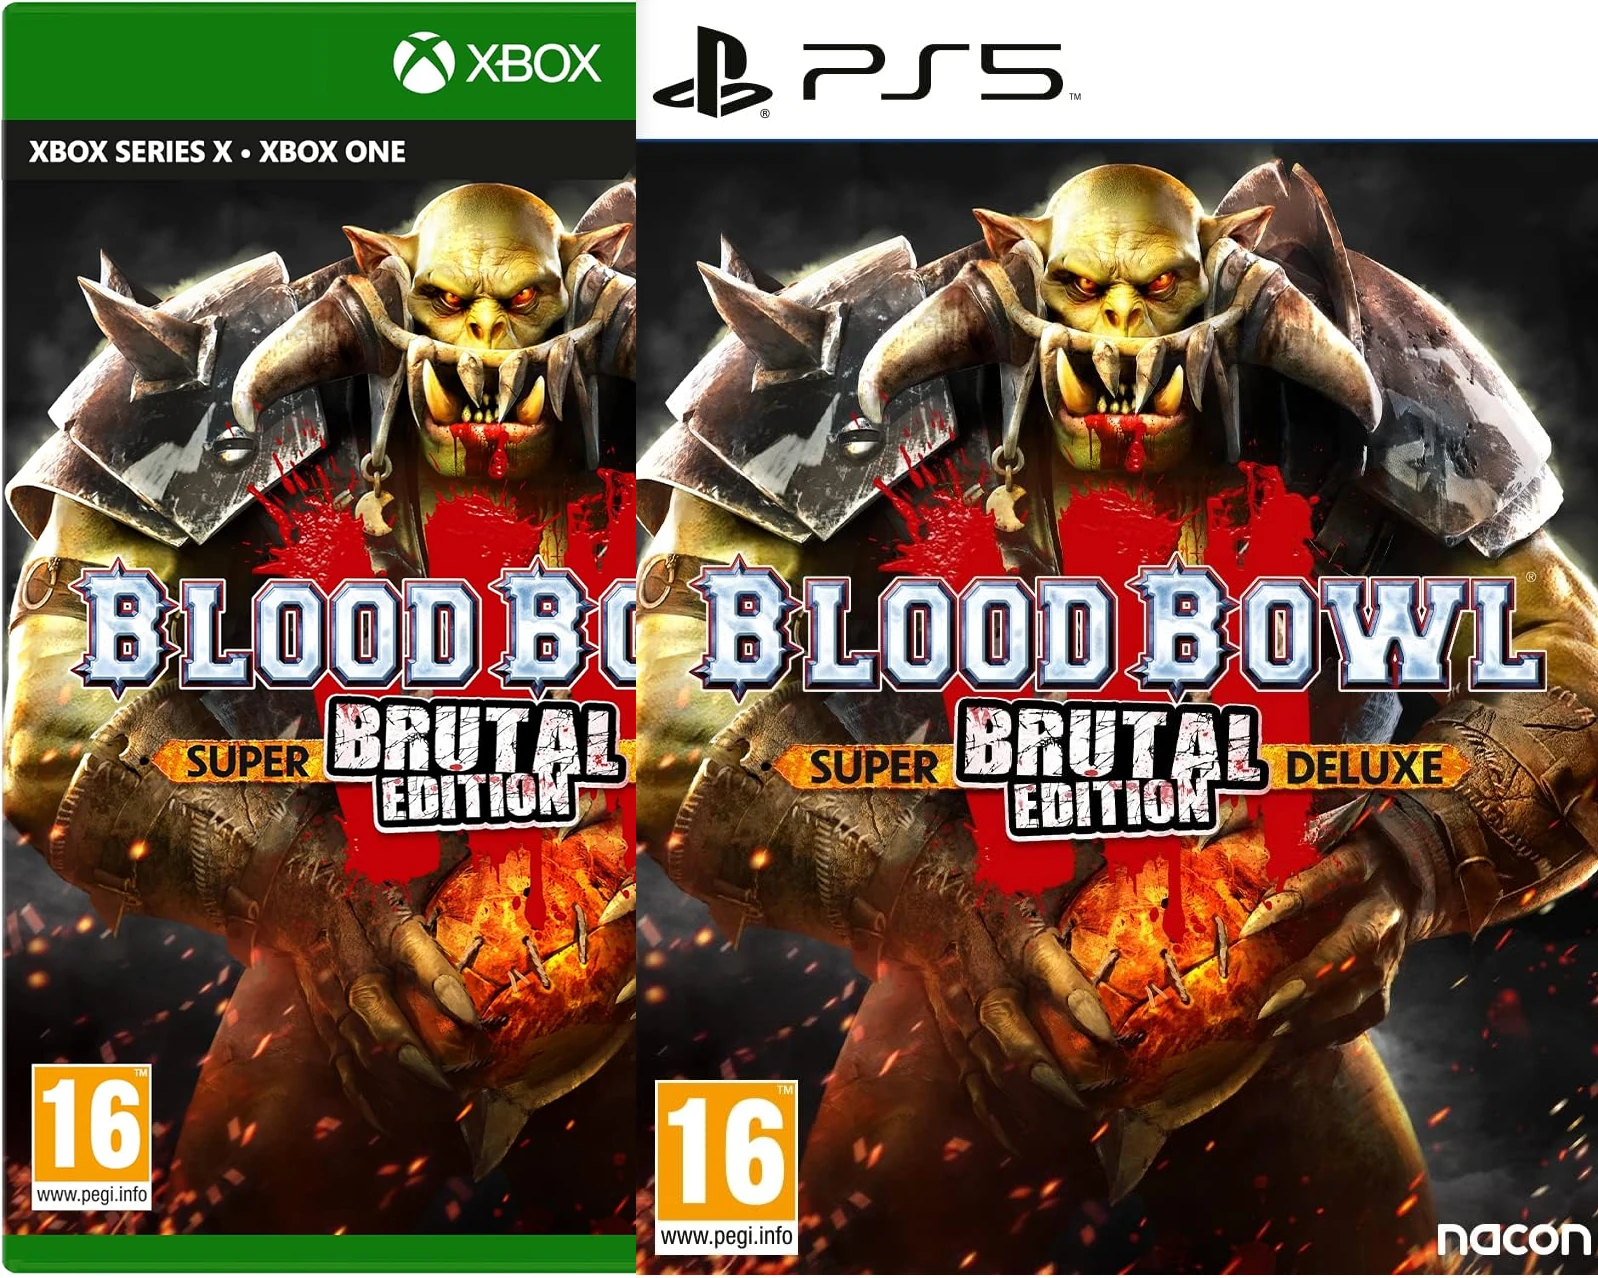 Blood Bowl 3 - Brutal Edition Super Deluxe